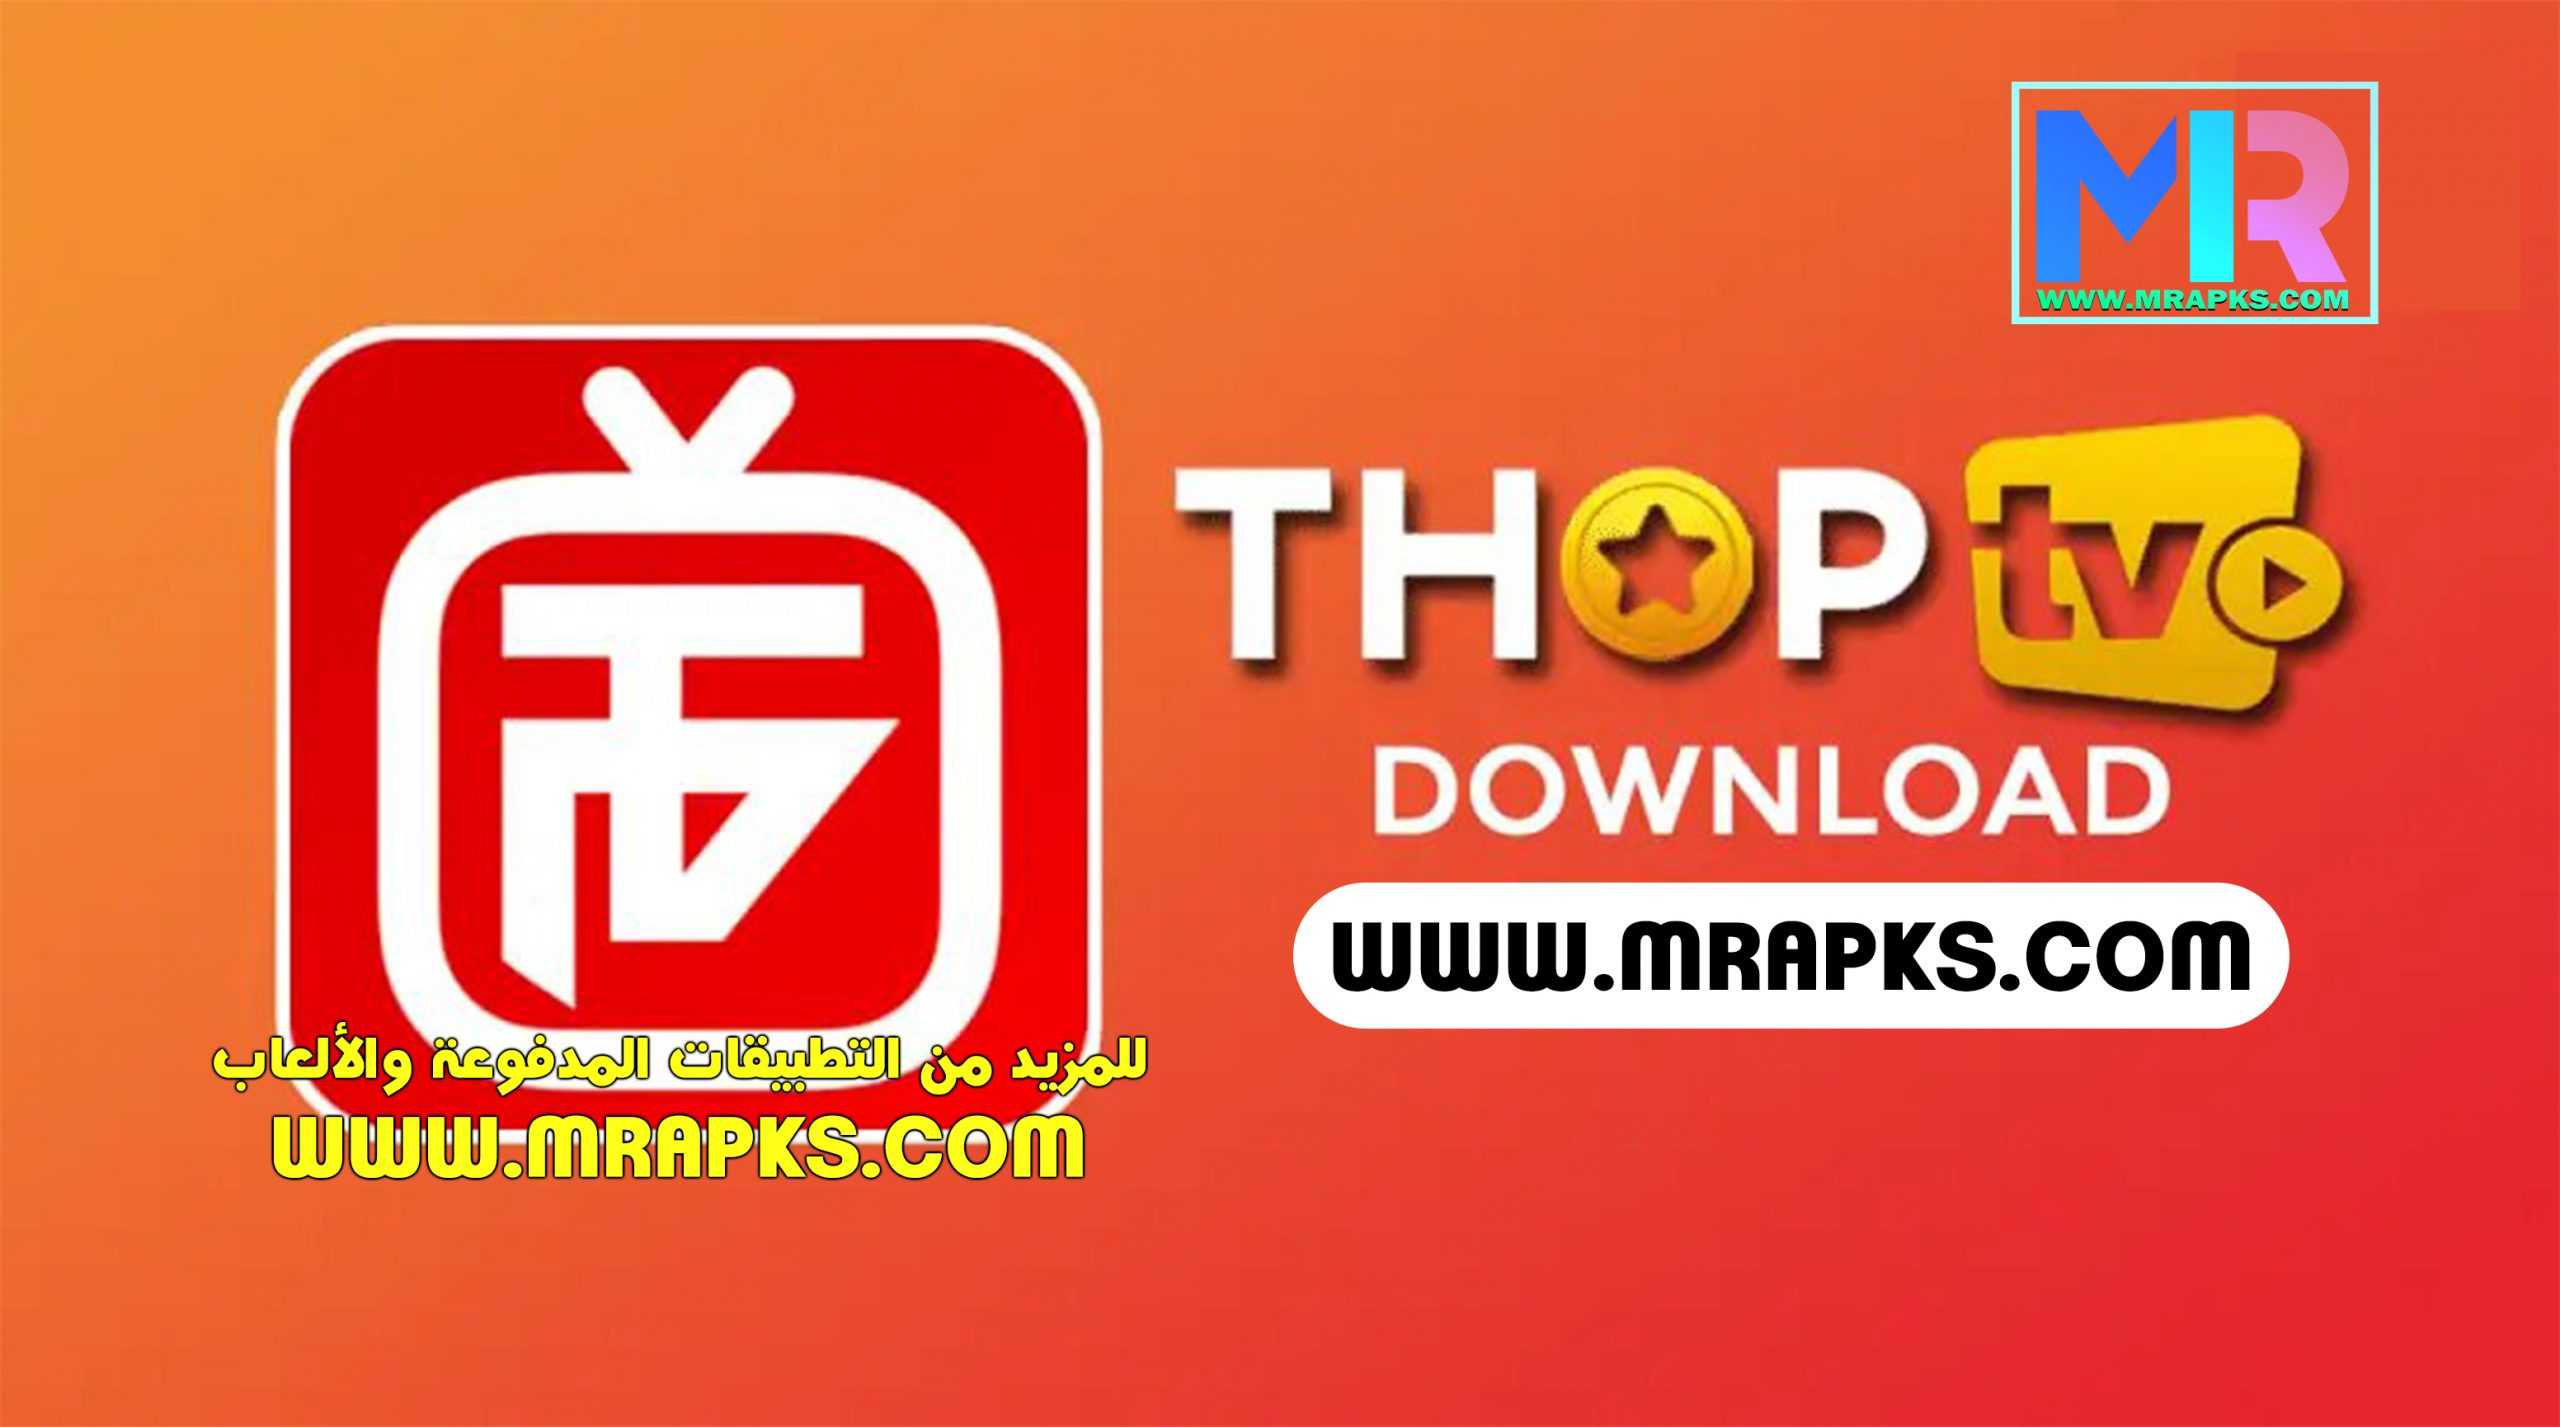 THOPTV v44.5.1 MOD (AD-FREE) Apk